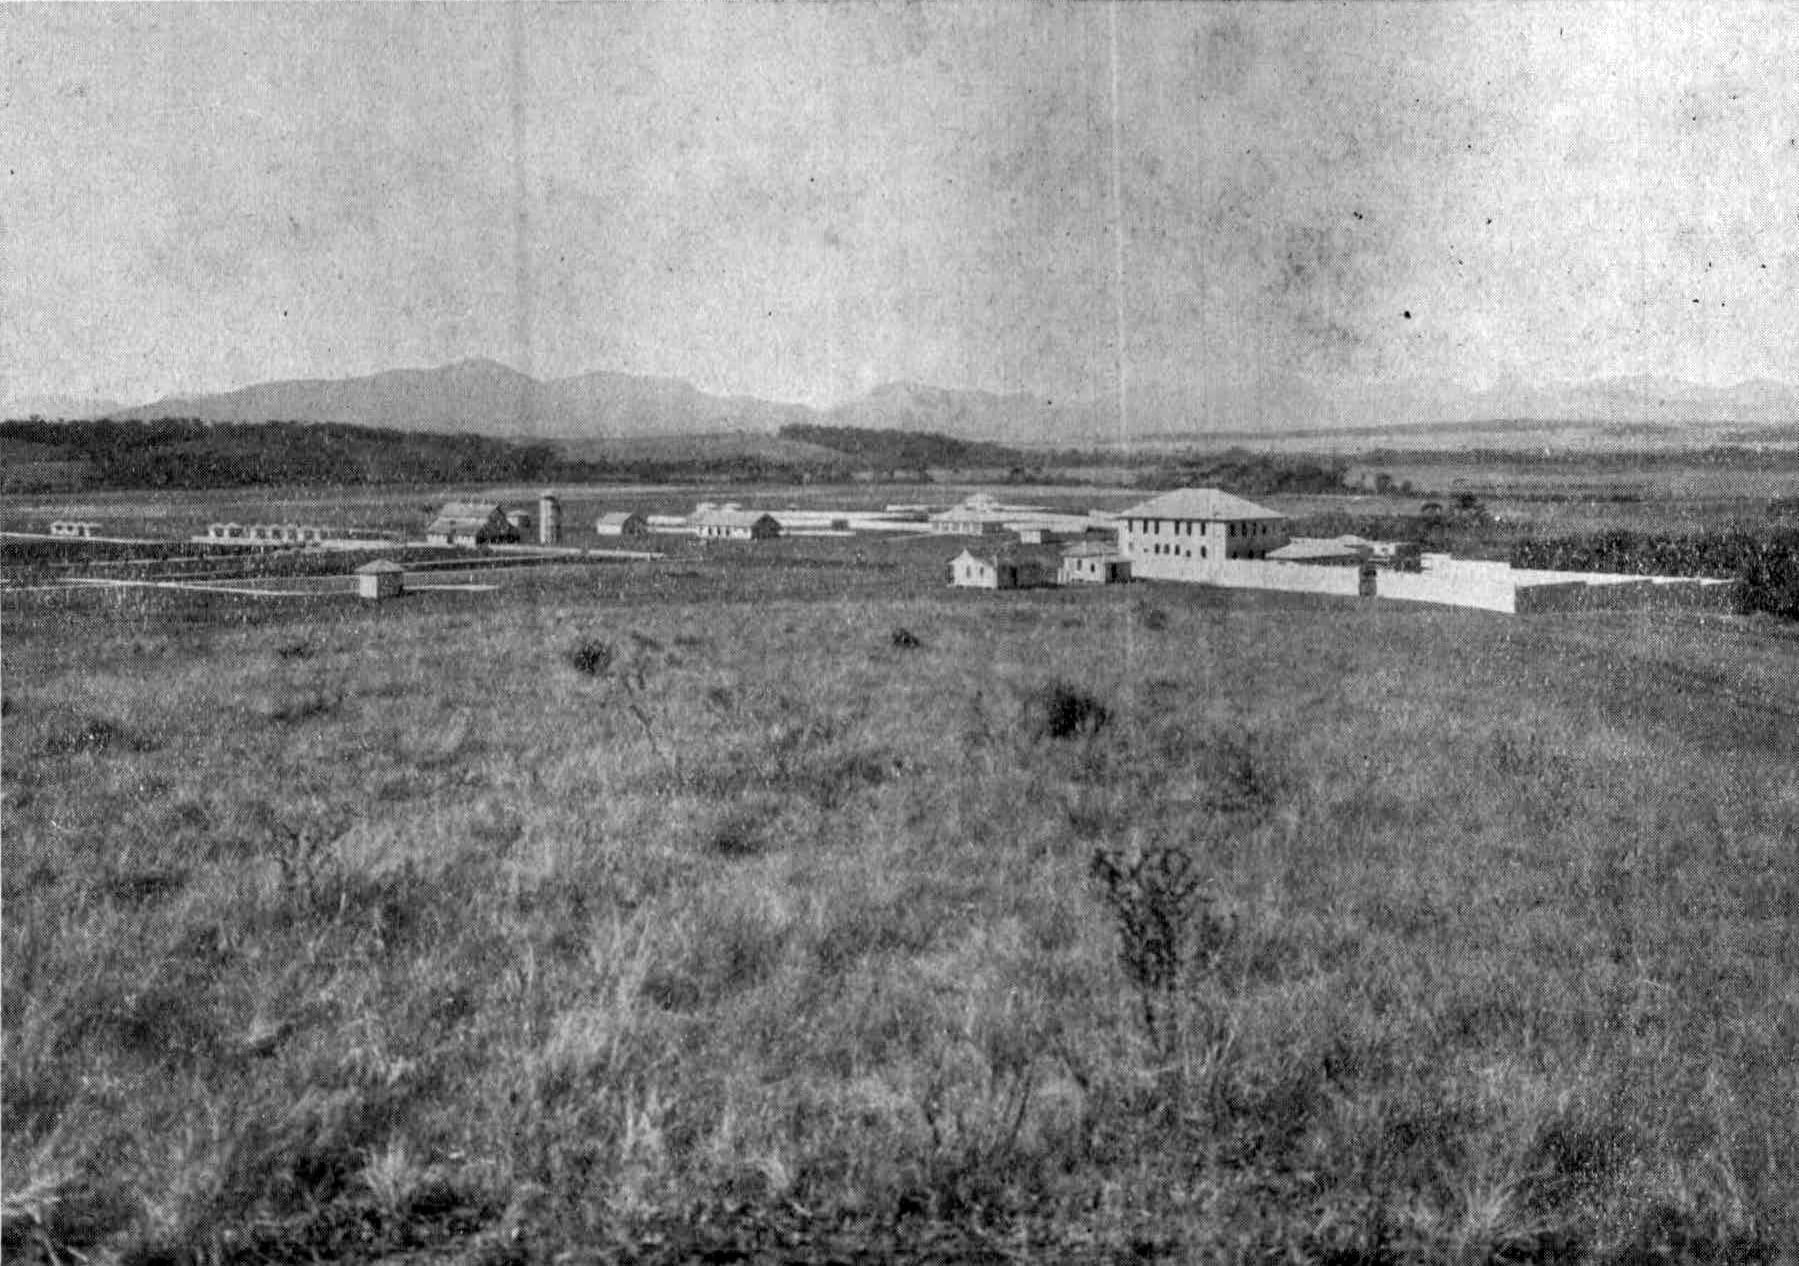 PodParaná #166: Conheça a história da Granja Canguiri, espaço que foi 'campo de concentração' de japoneses